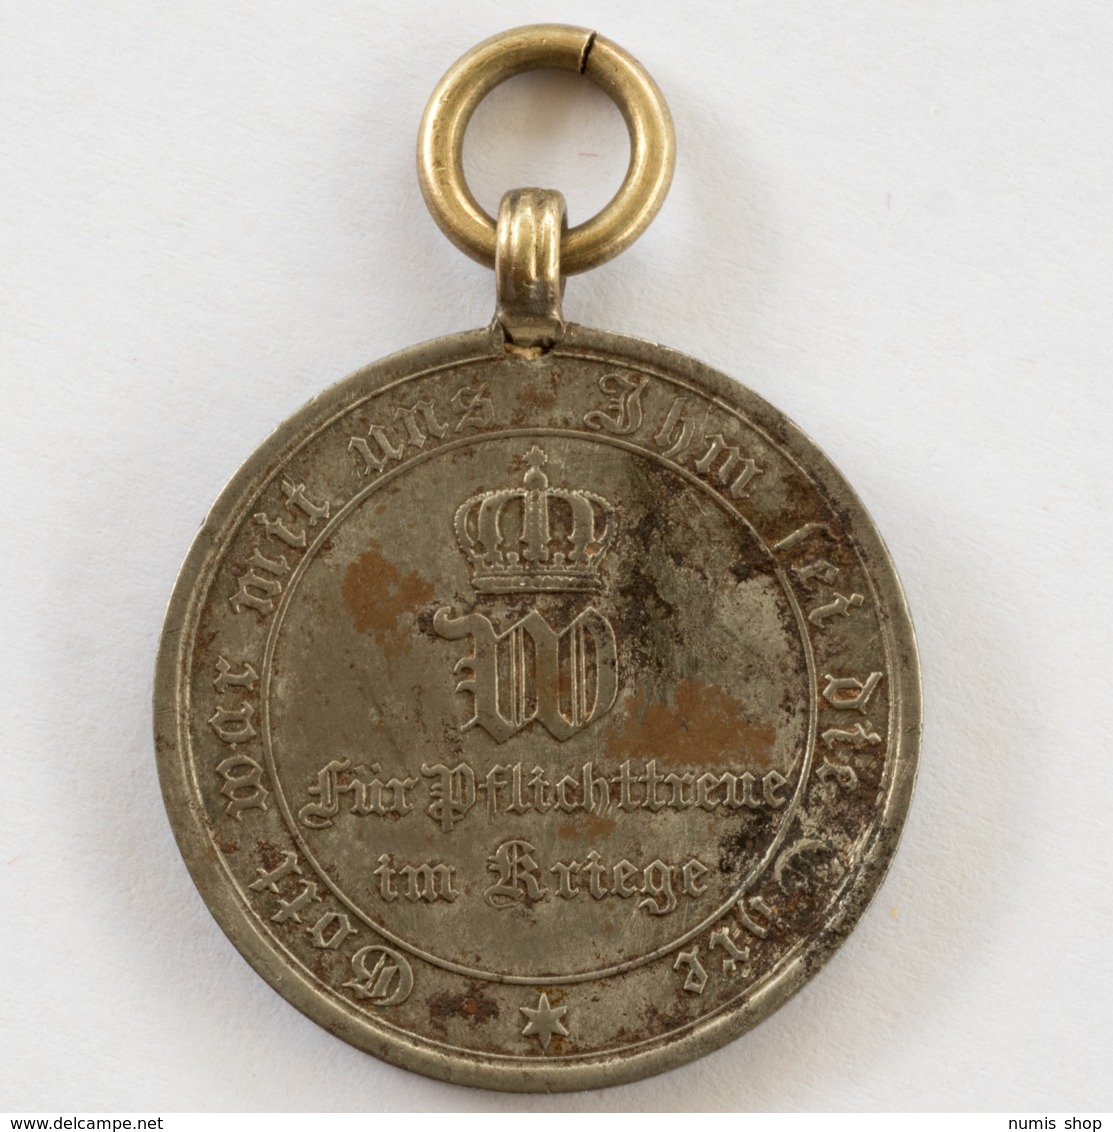 GERMANY - EMPIRE - Medaille - Für Pflichttreue Im Kriege - 1870 / 71 - #962 - Germany